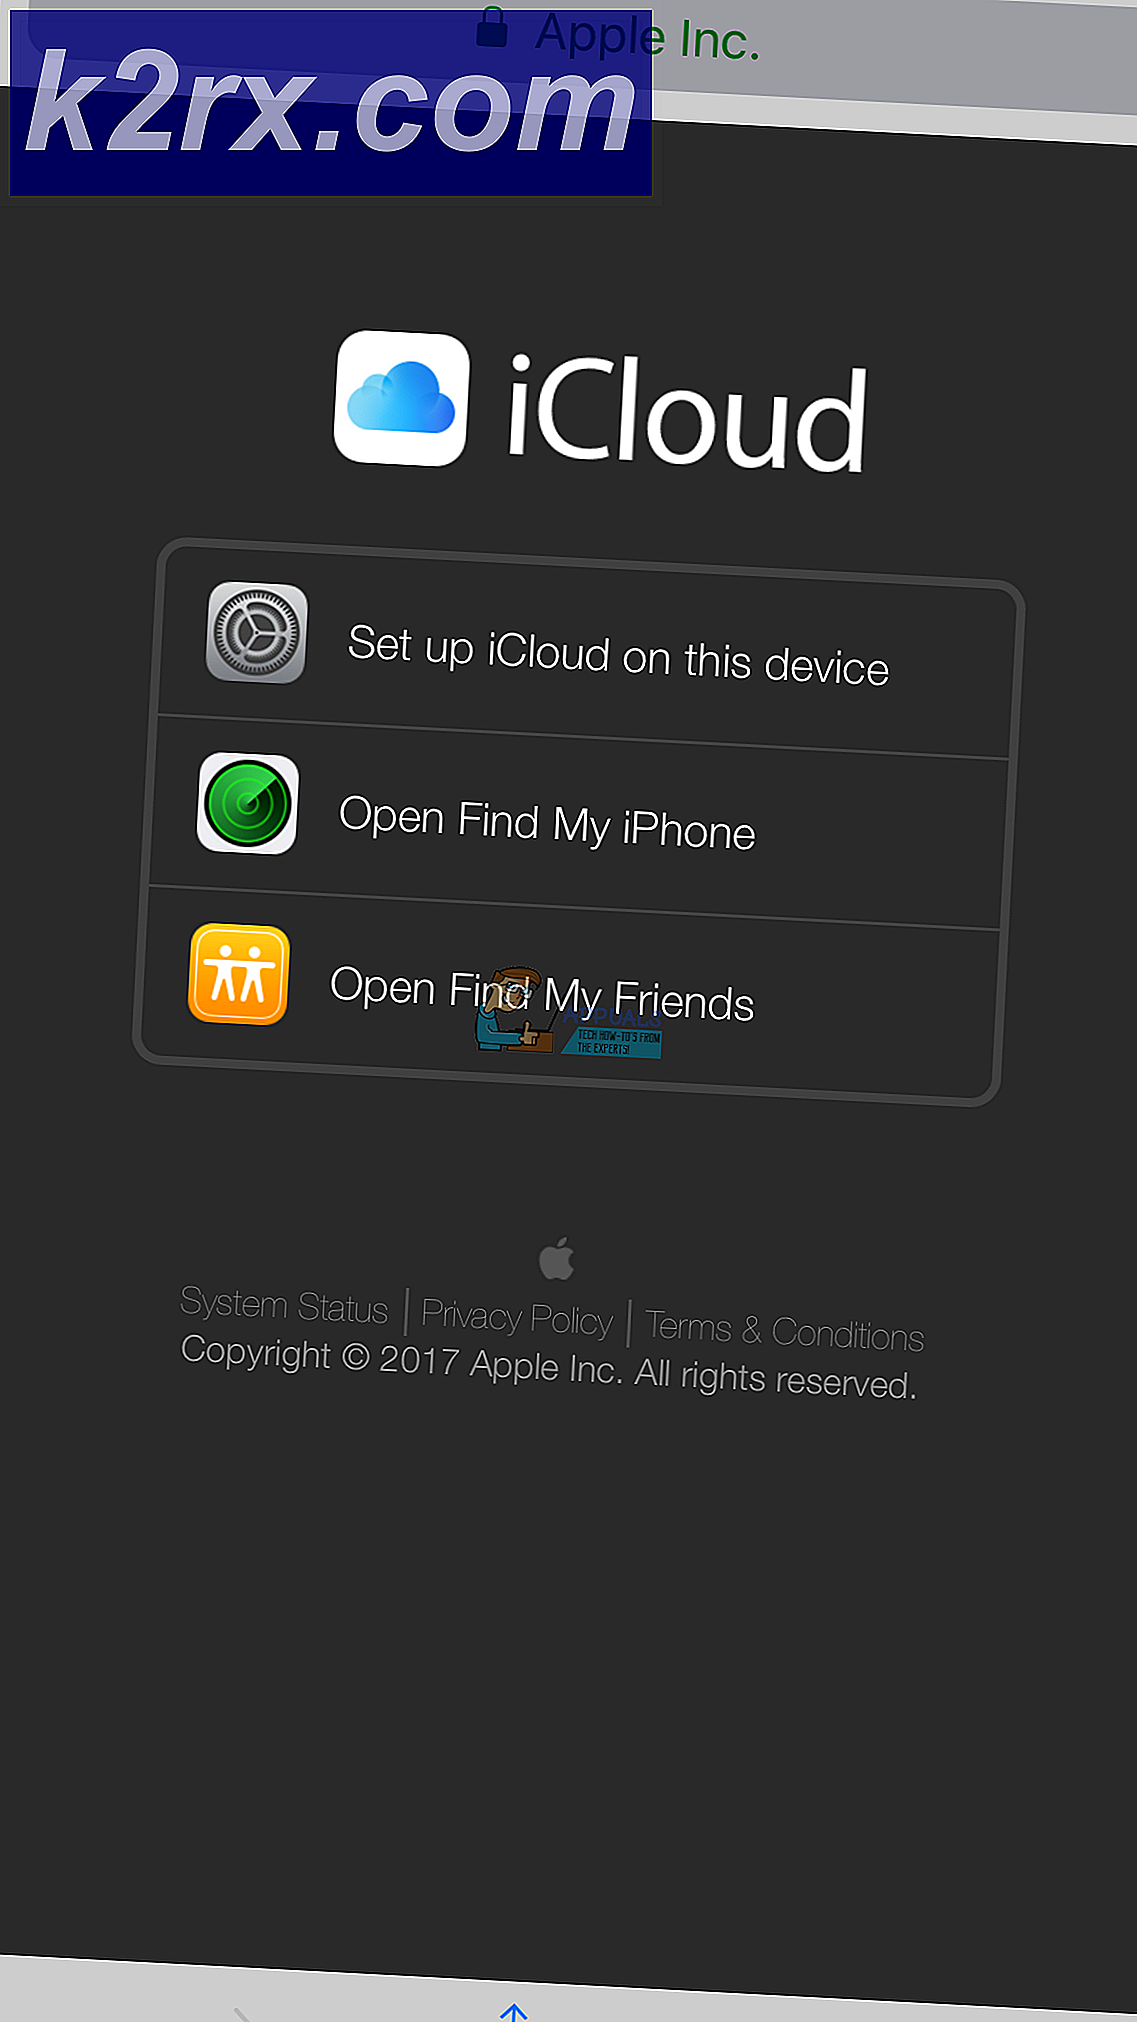 วิธีการเข้าสู่ระบบ iCloud.com โดยใช้ iPhone หรือ iPad ของคุณ